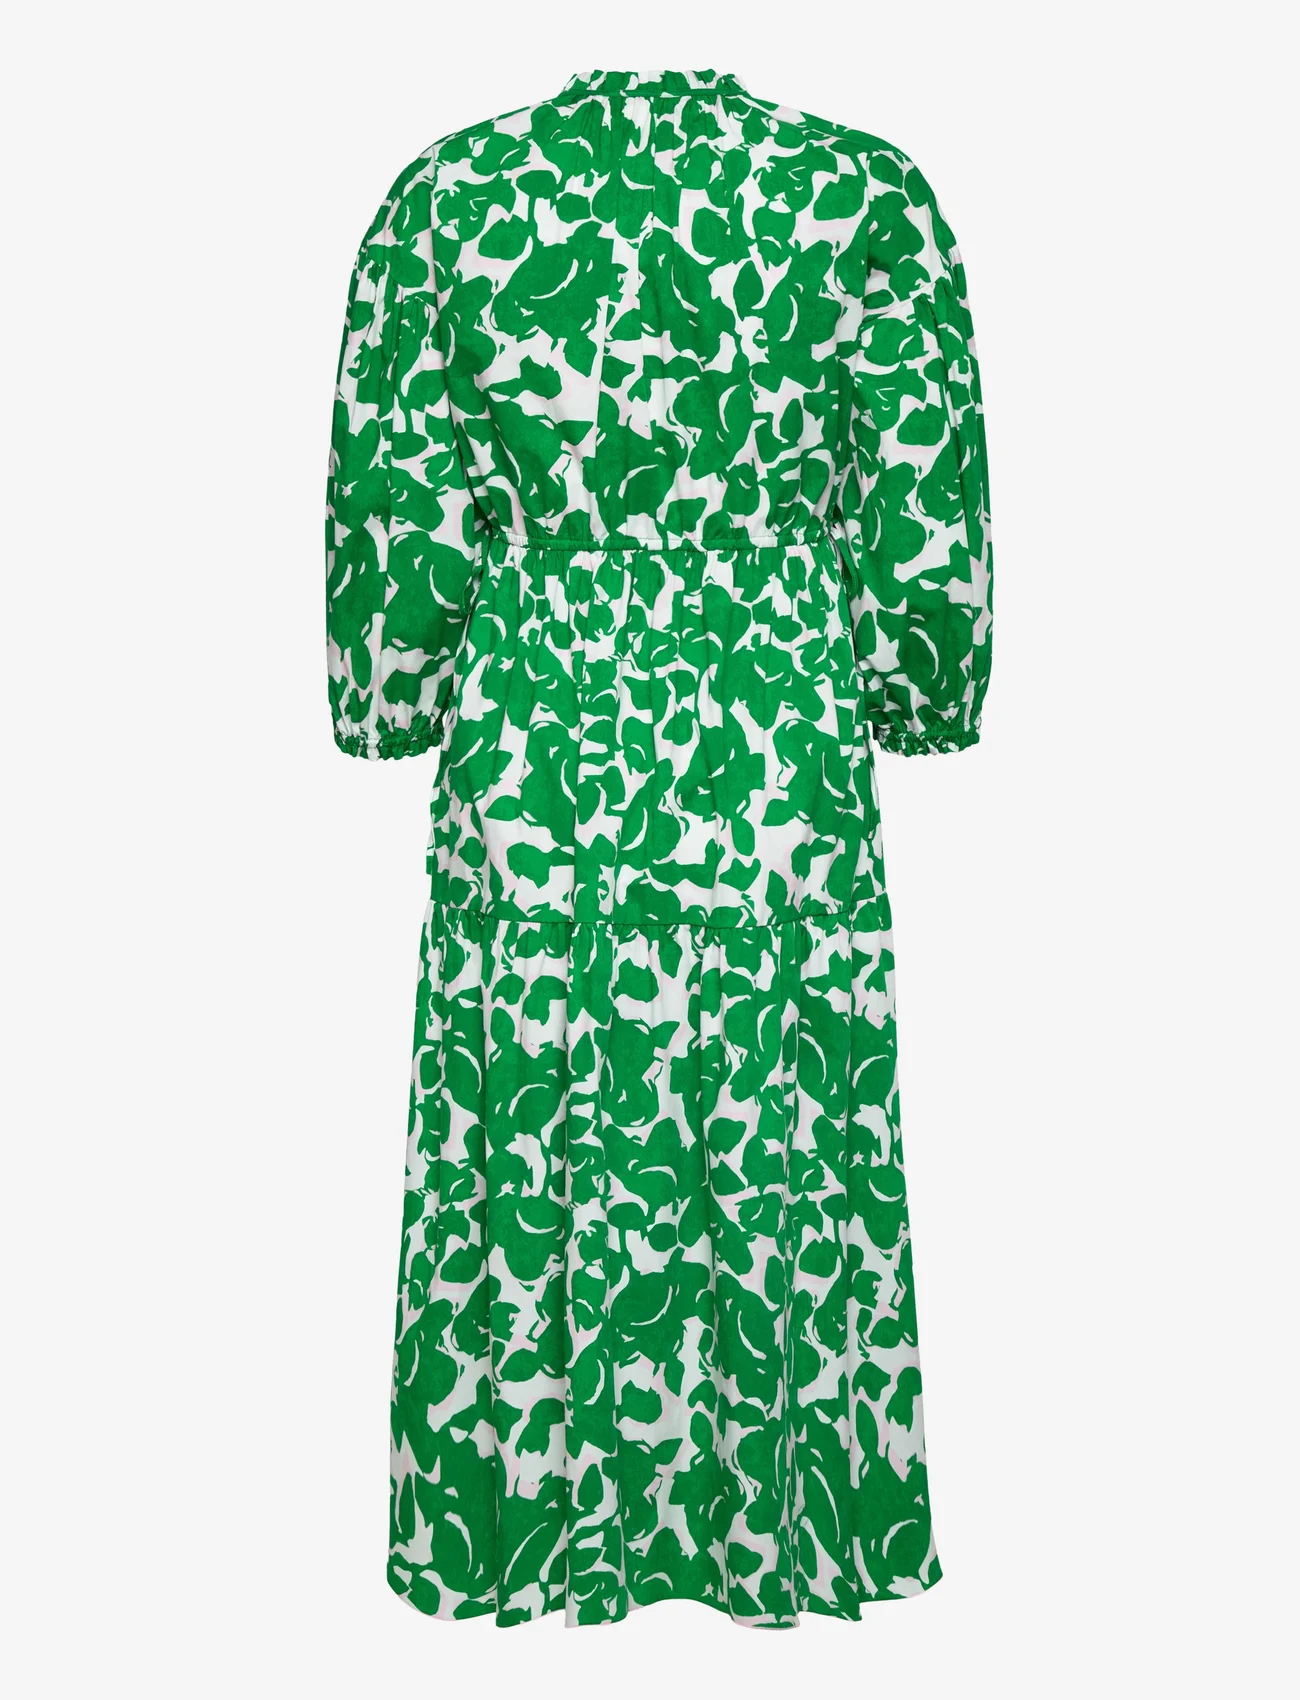 Diane von Furstenberg - DVF ARTIE DRESS - summer dresses - flora nocturna green - 1